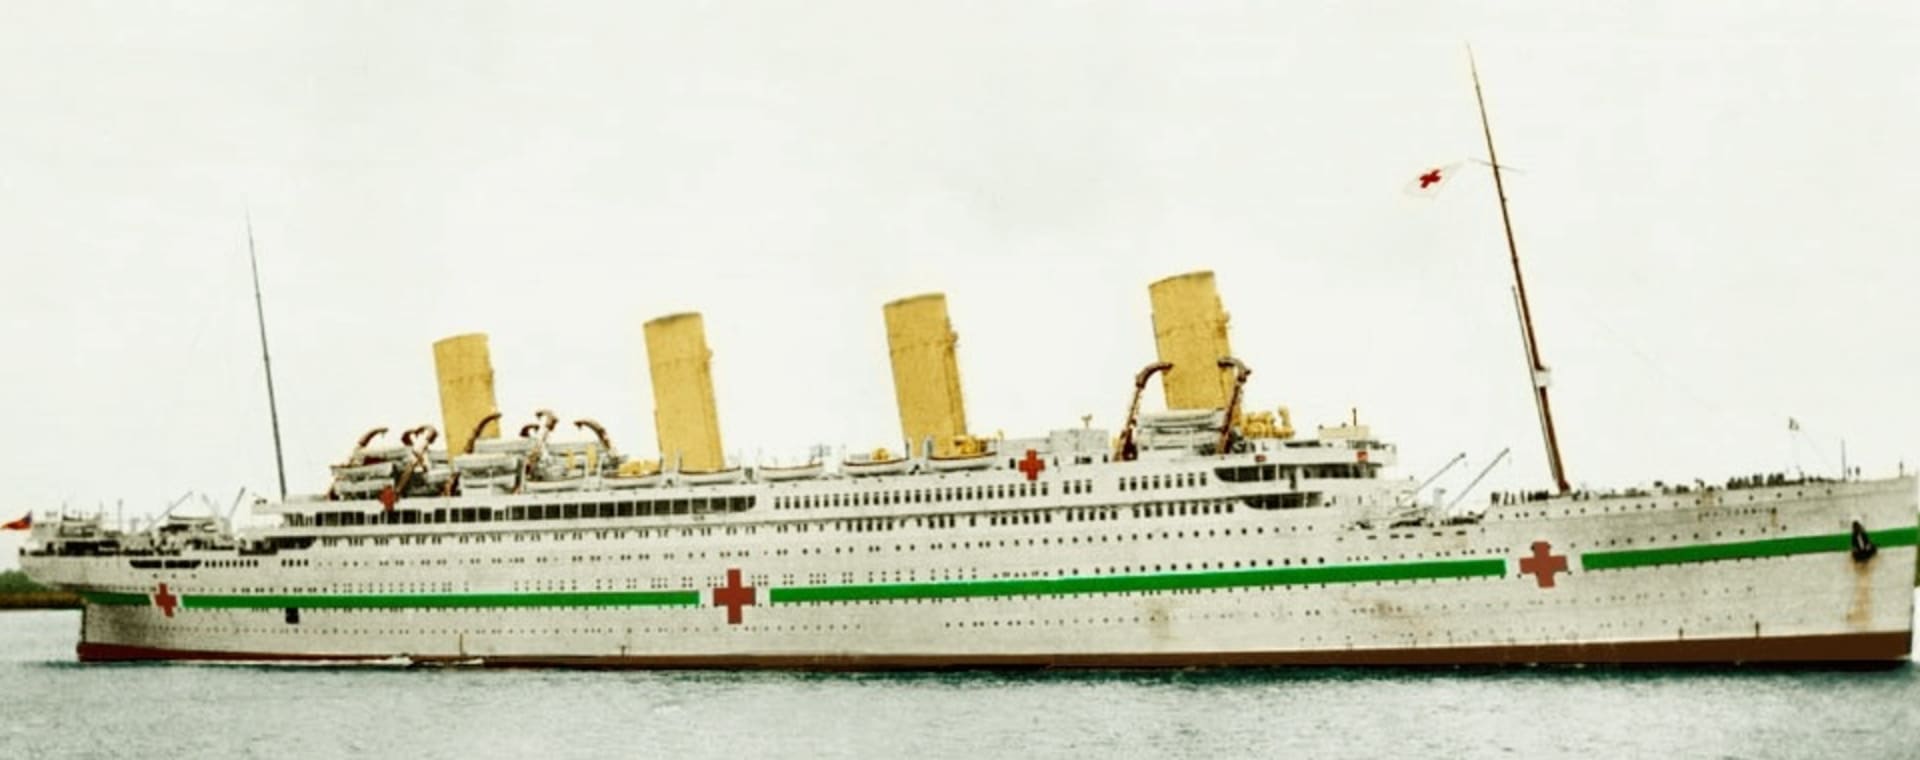 HMHS Britannic se potopil právě před 100 lety